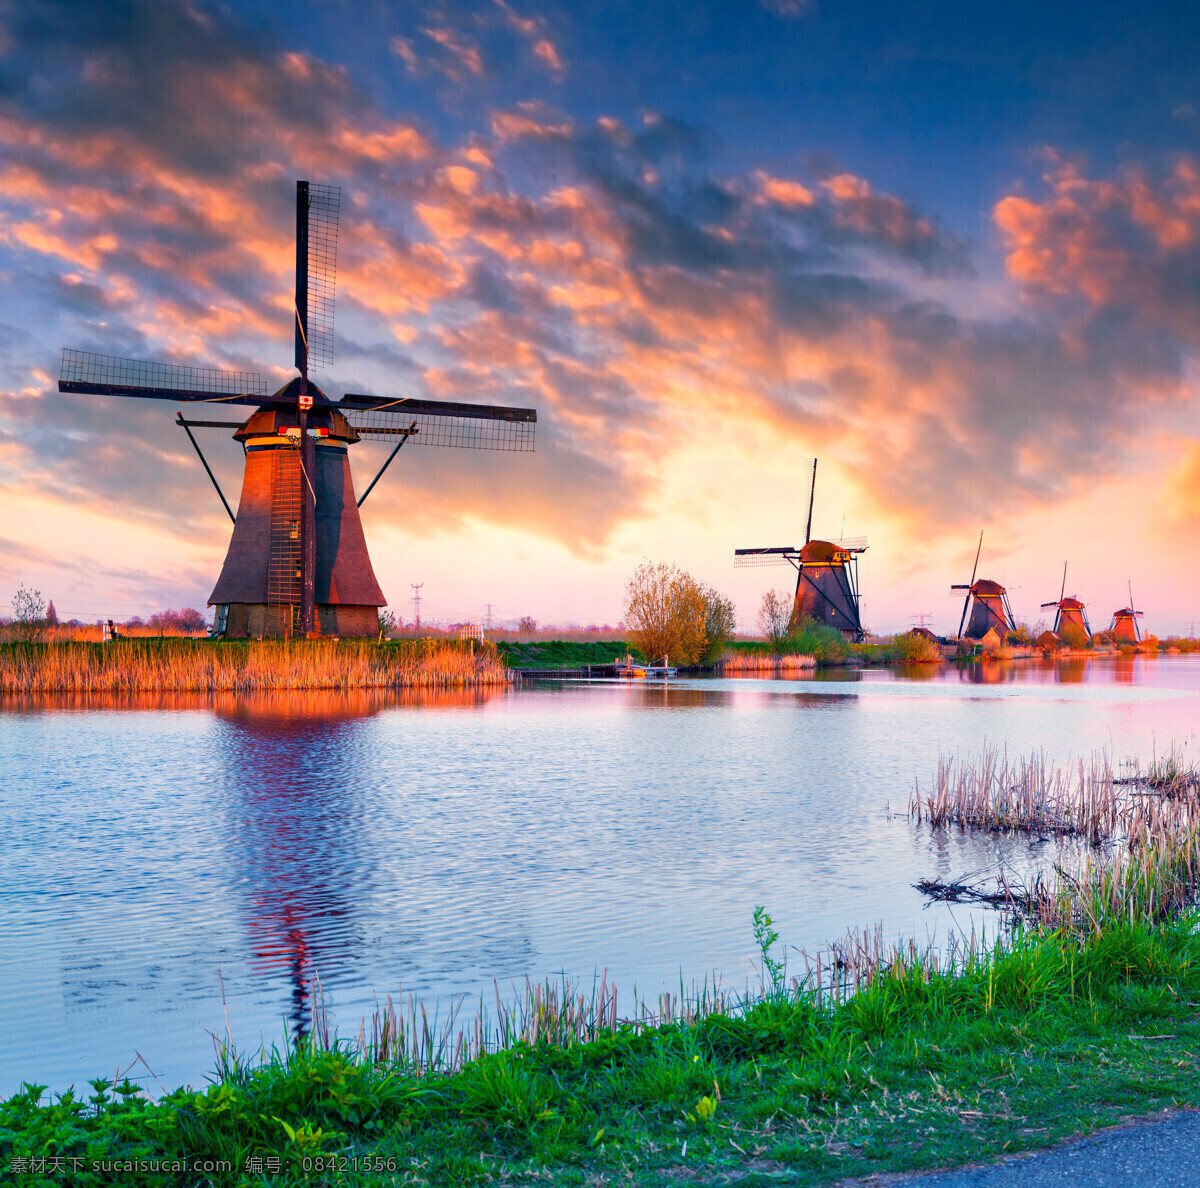 荷兰风车 建筑风车 大风车 旋转风车 木头风车 风车建筑 建筑 扇叶 风车设备 自然景观 自然风景 自然风光